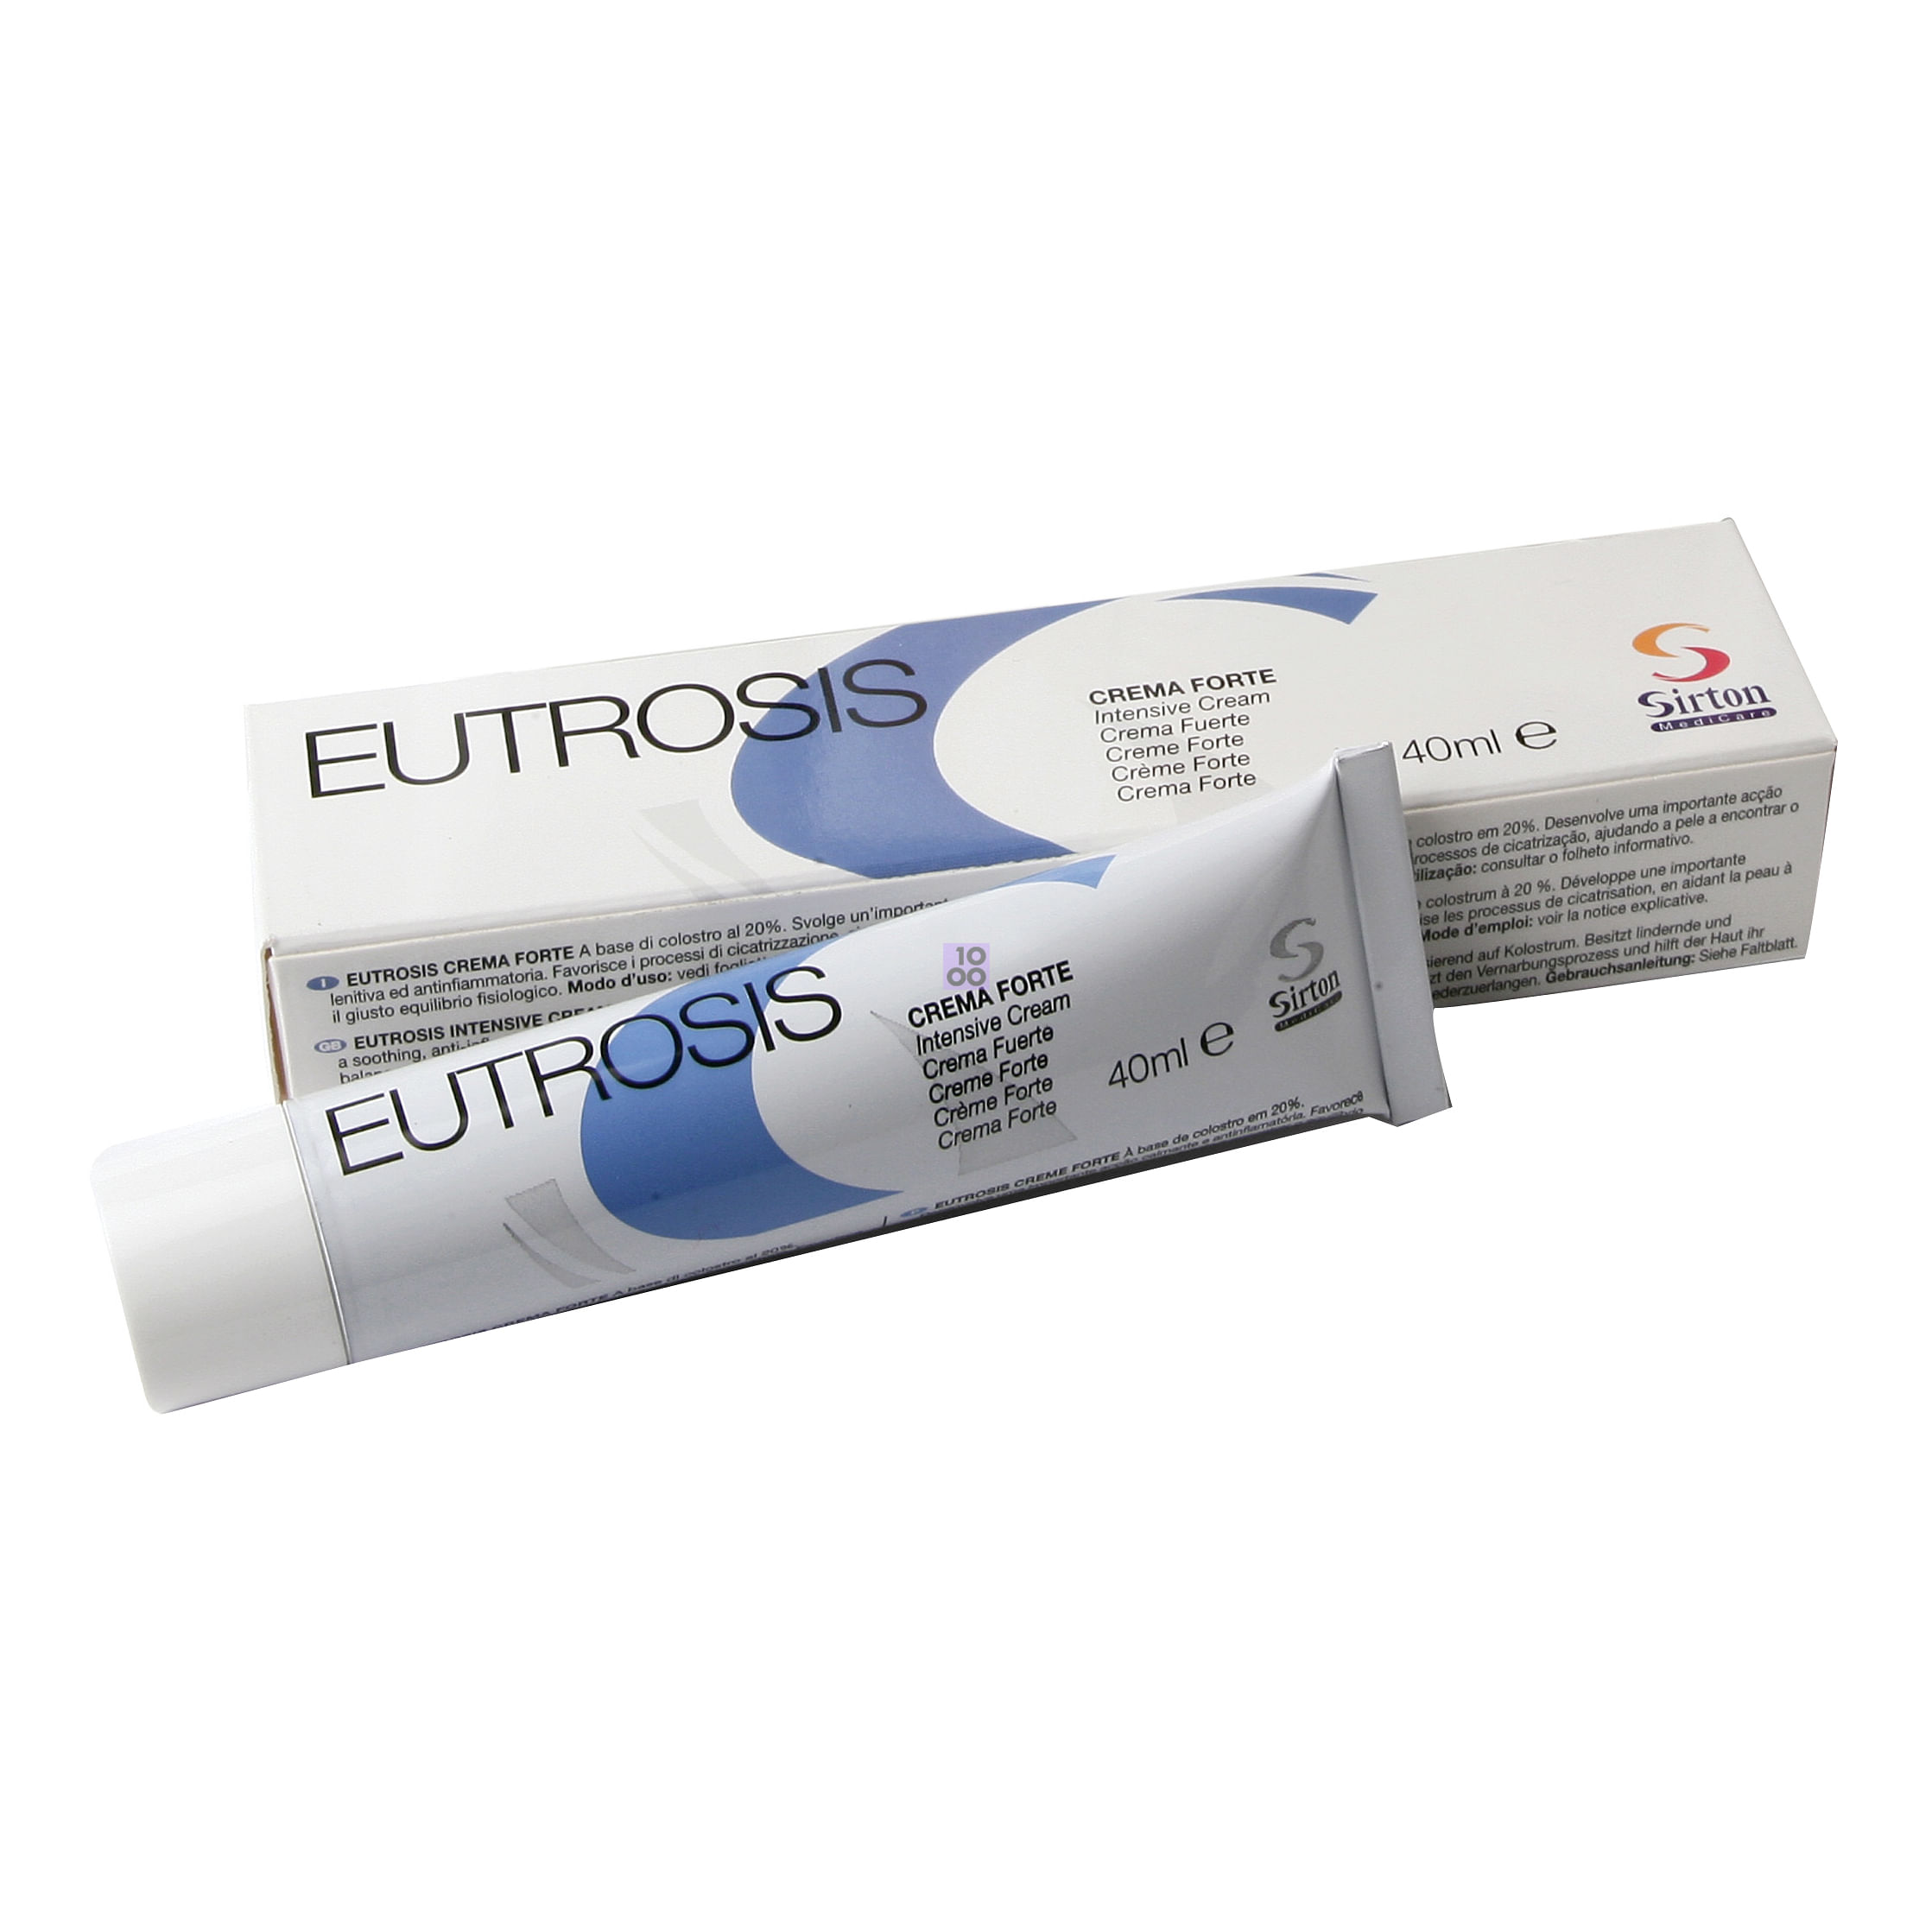 Eutrosis Crema Forte 40 Ml: Utilizzo, effetti collaterali e prezzo